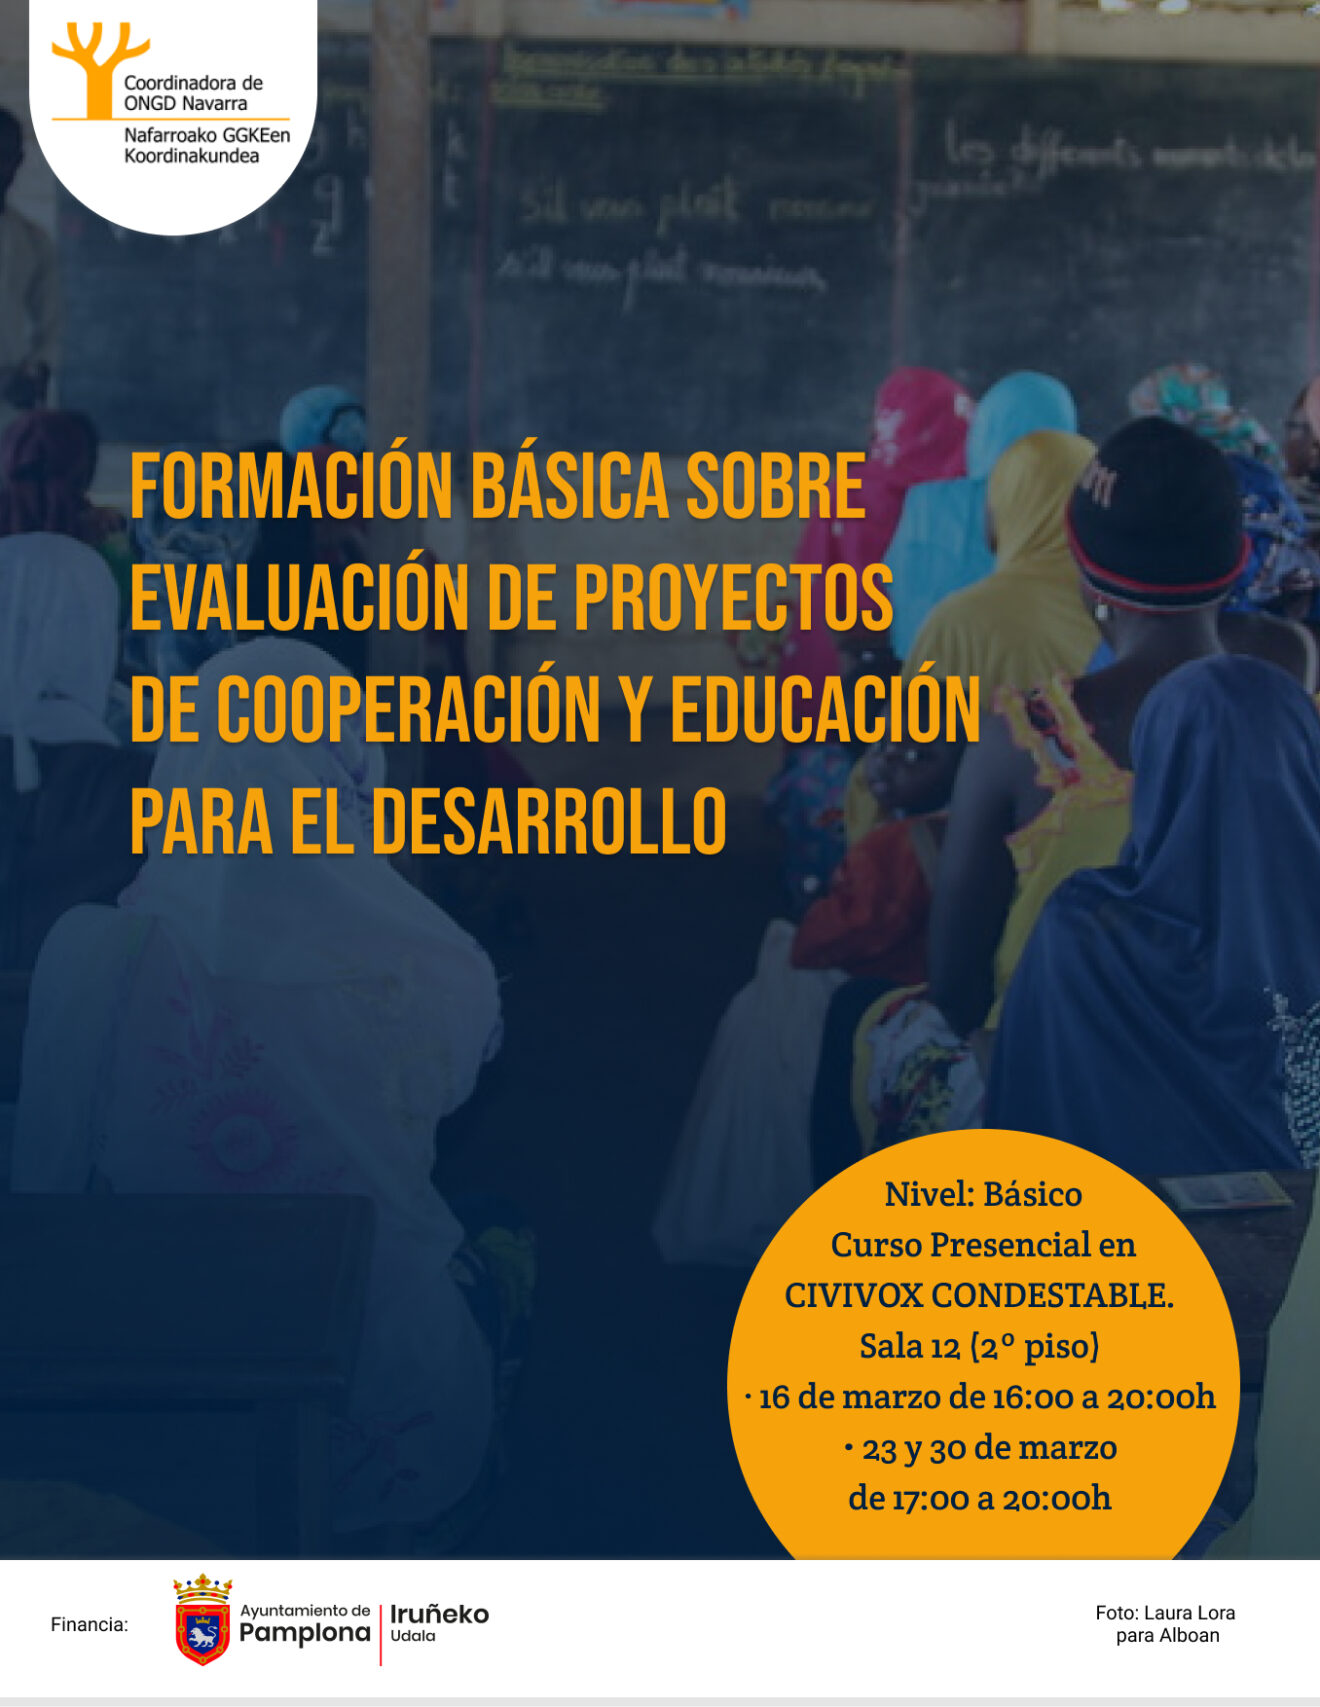 Formación básica sobre evaluación de proyectos de cooperación y educación para el desarrollo